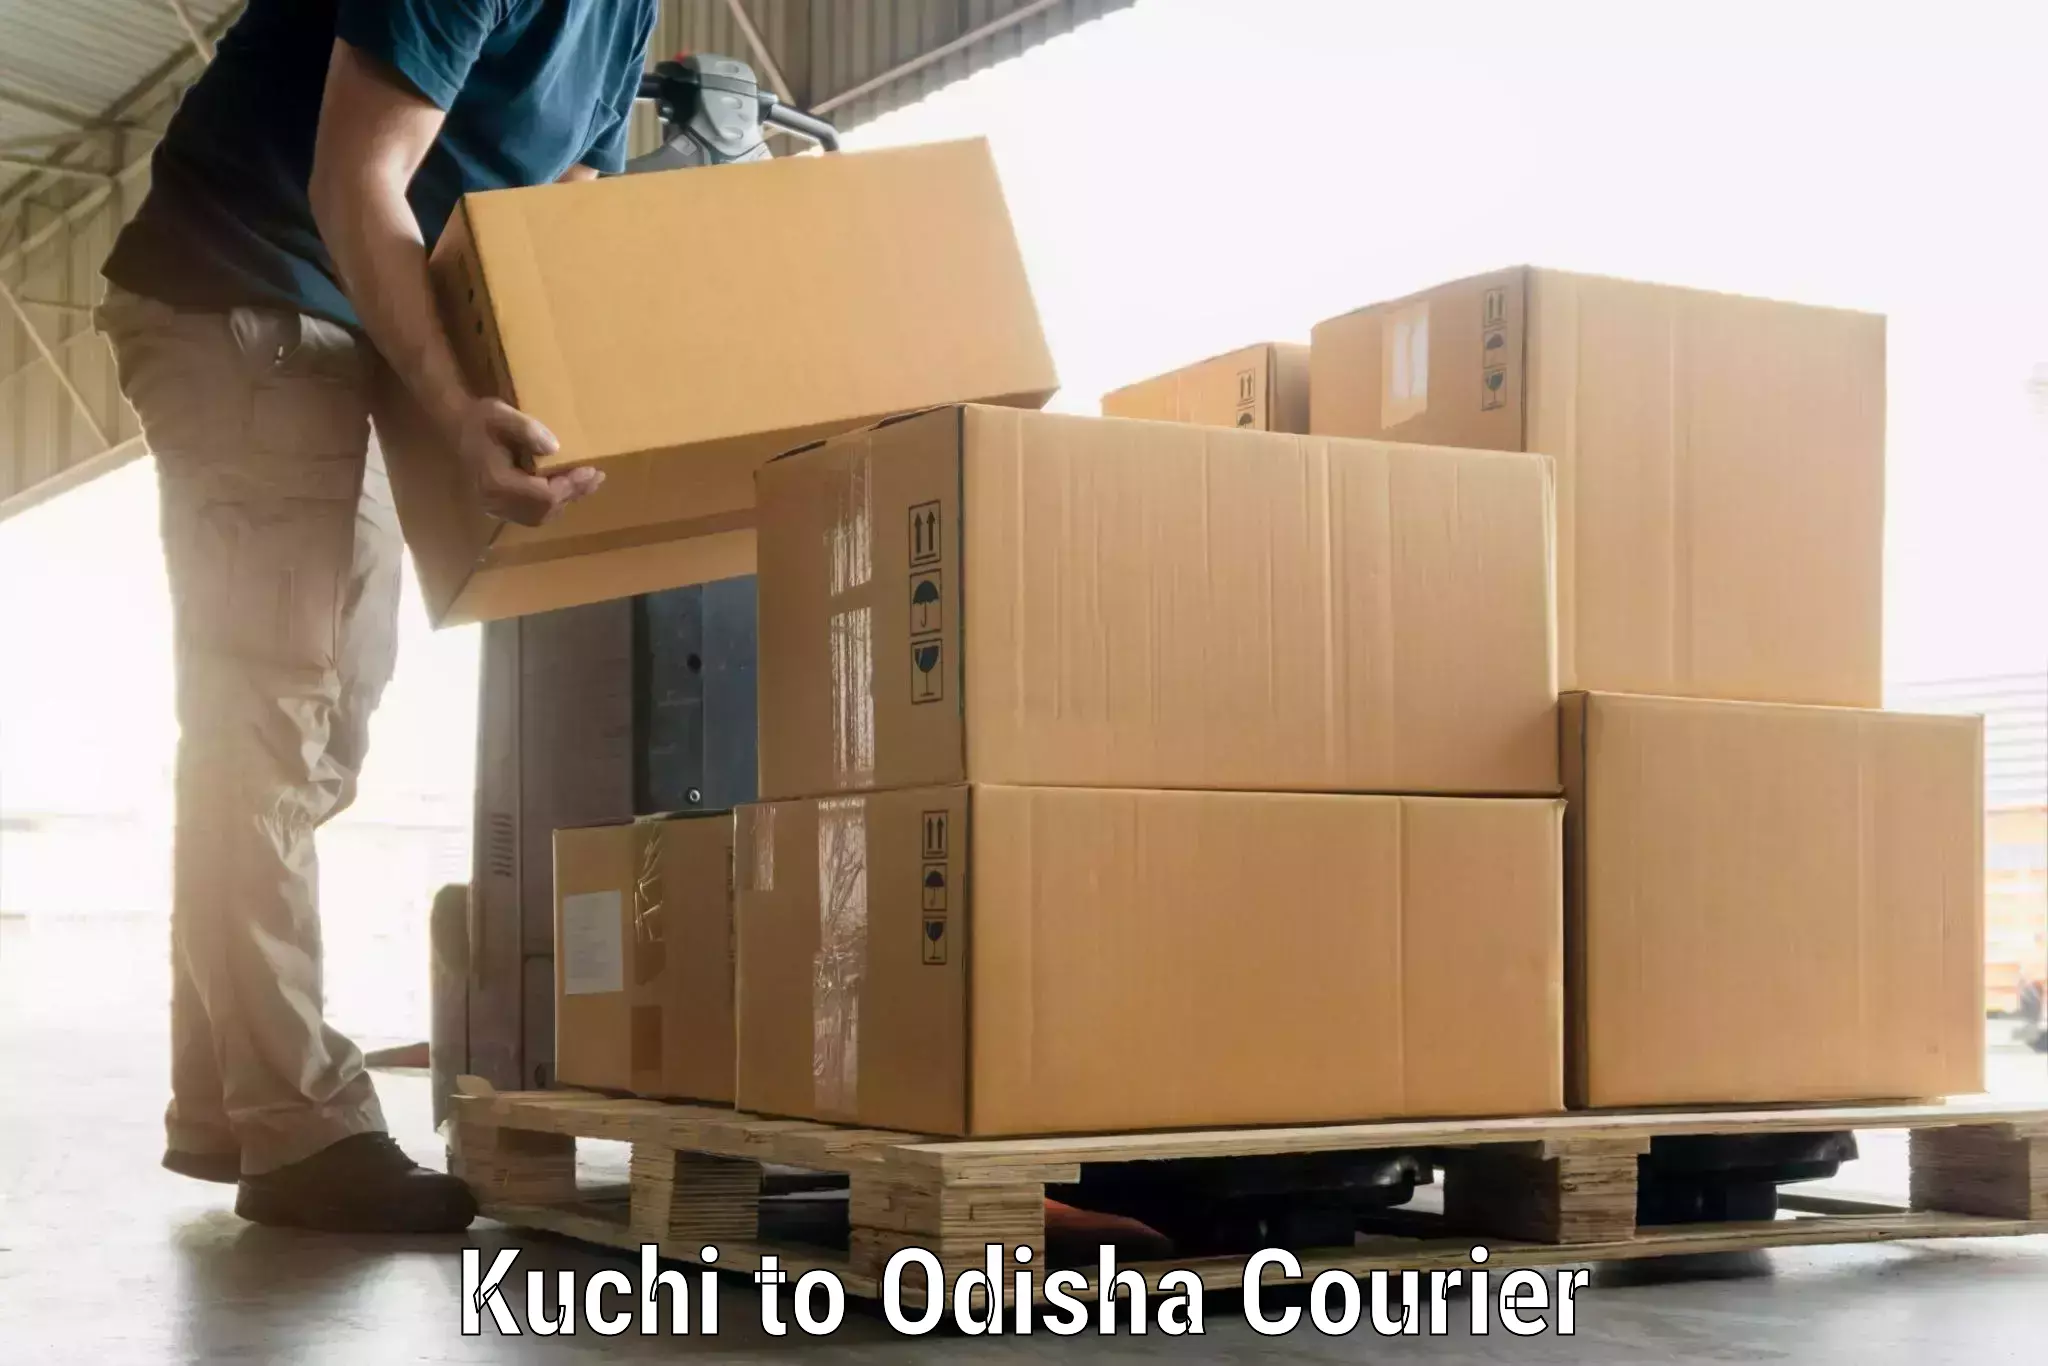 Automated luggage transport Kuchi to Boipariguda